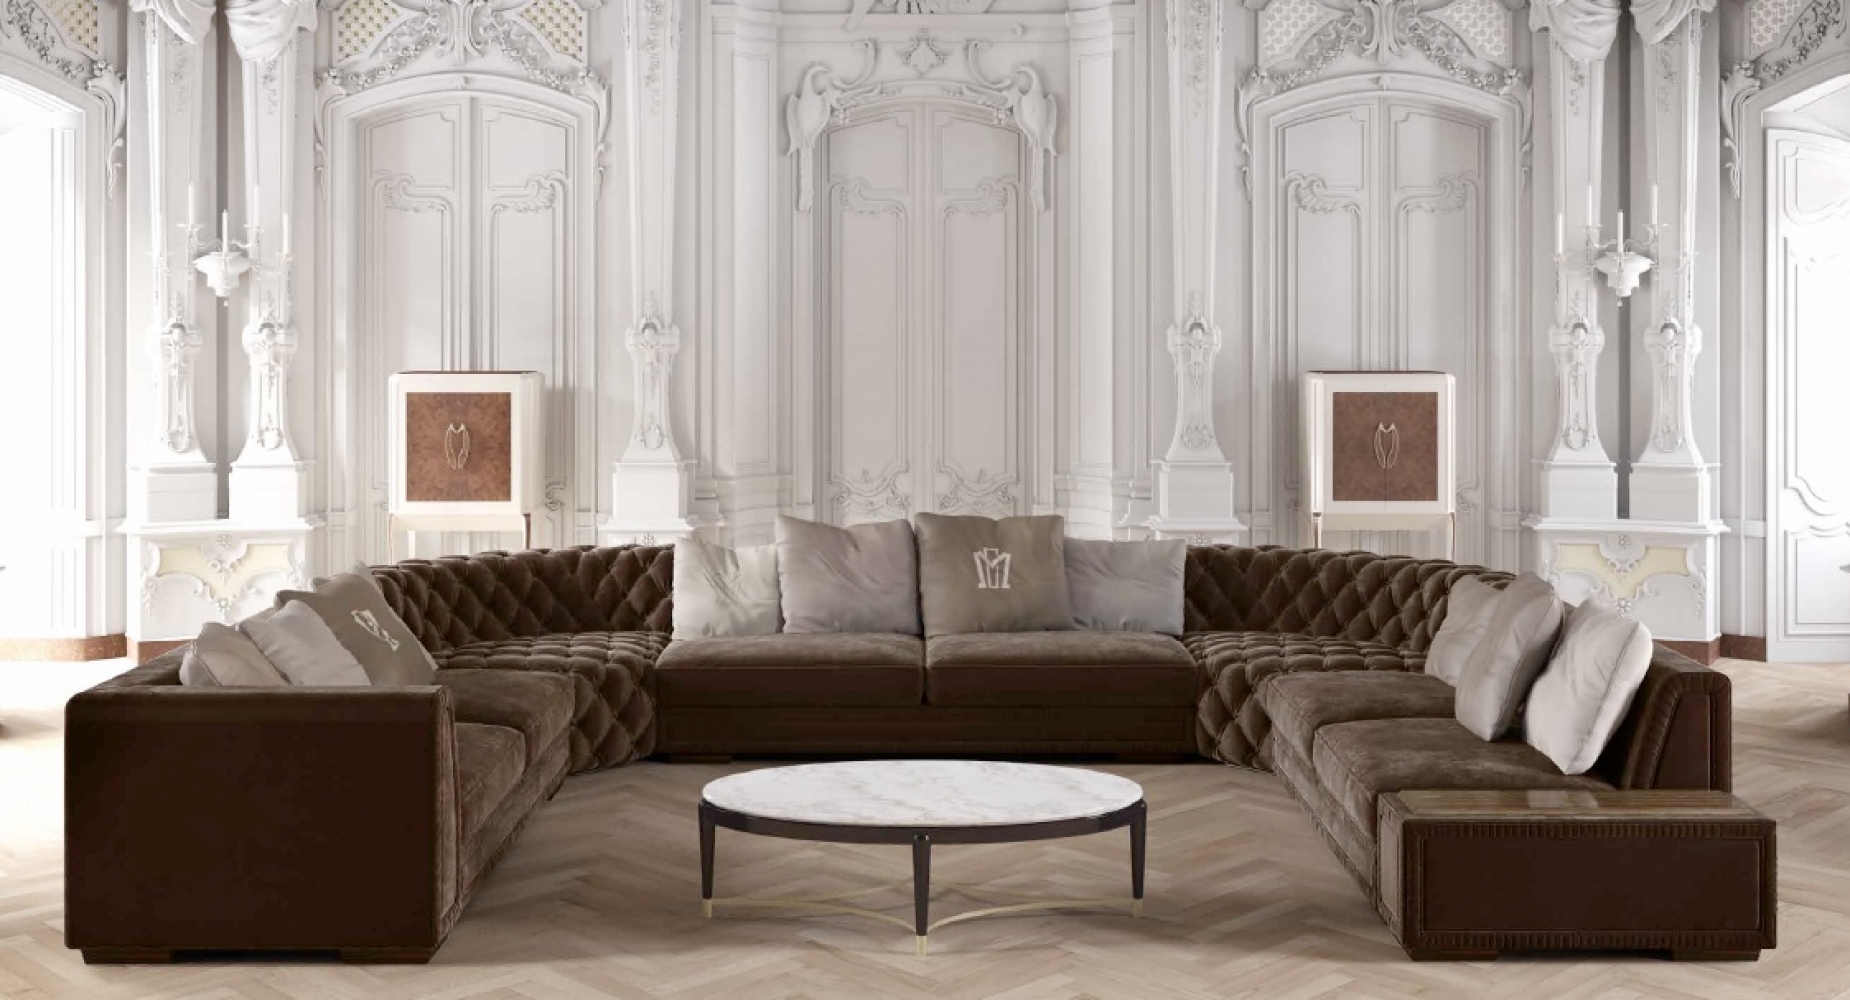 Итальянские диваны и кресла - удовольствие и мягкий комфорт